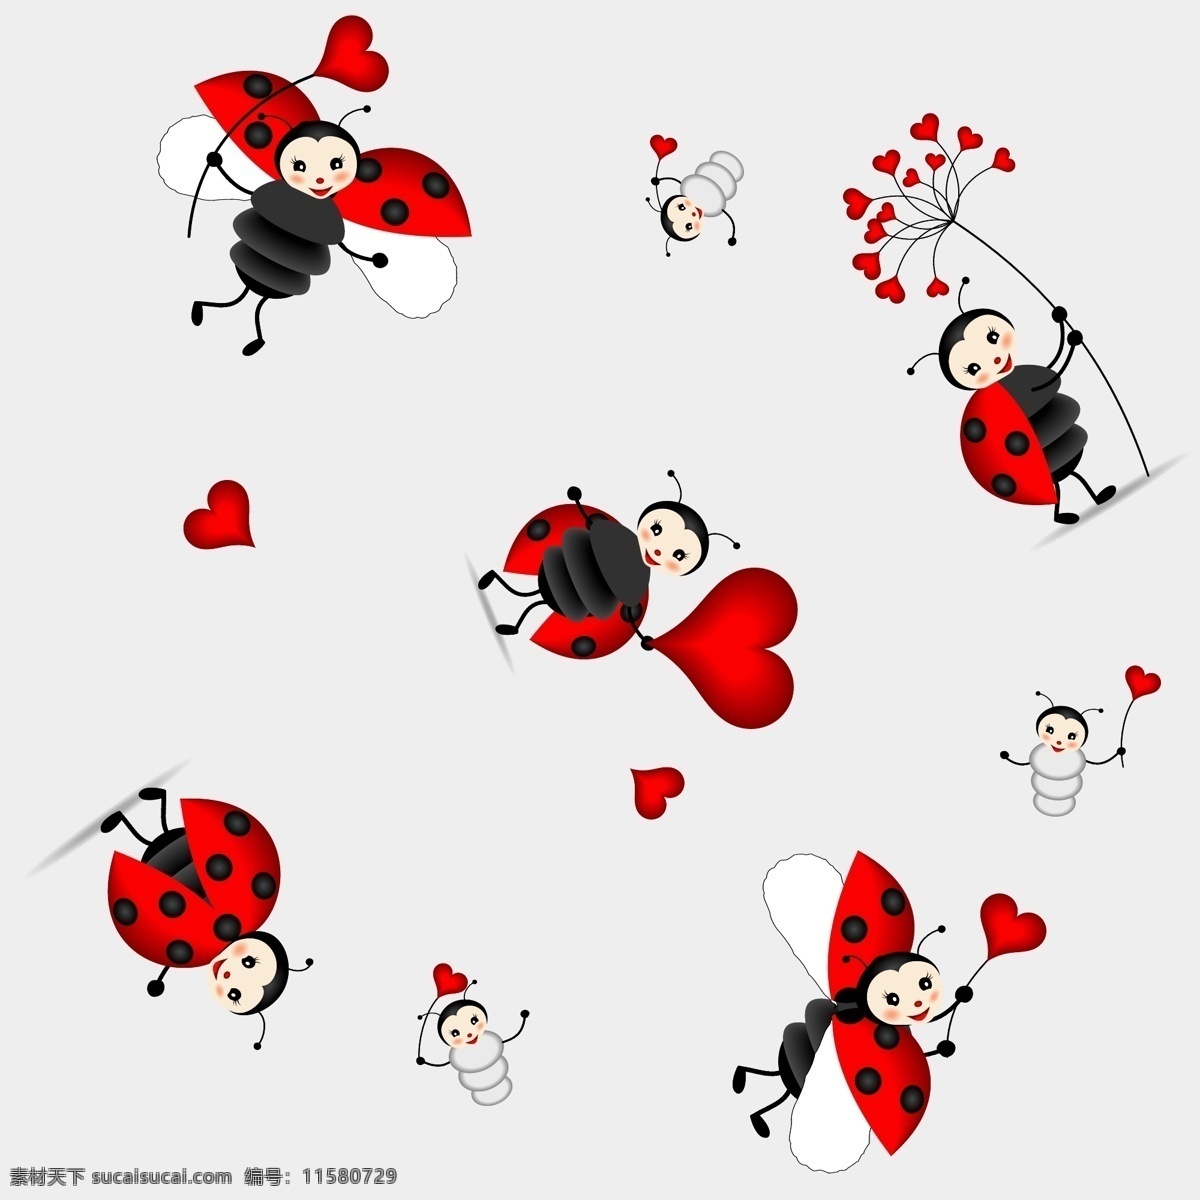 瓢虫 红心 昆虫 生物世界 爱心昆虫 可爱系列 爱心瓢虫 矢量